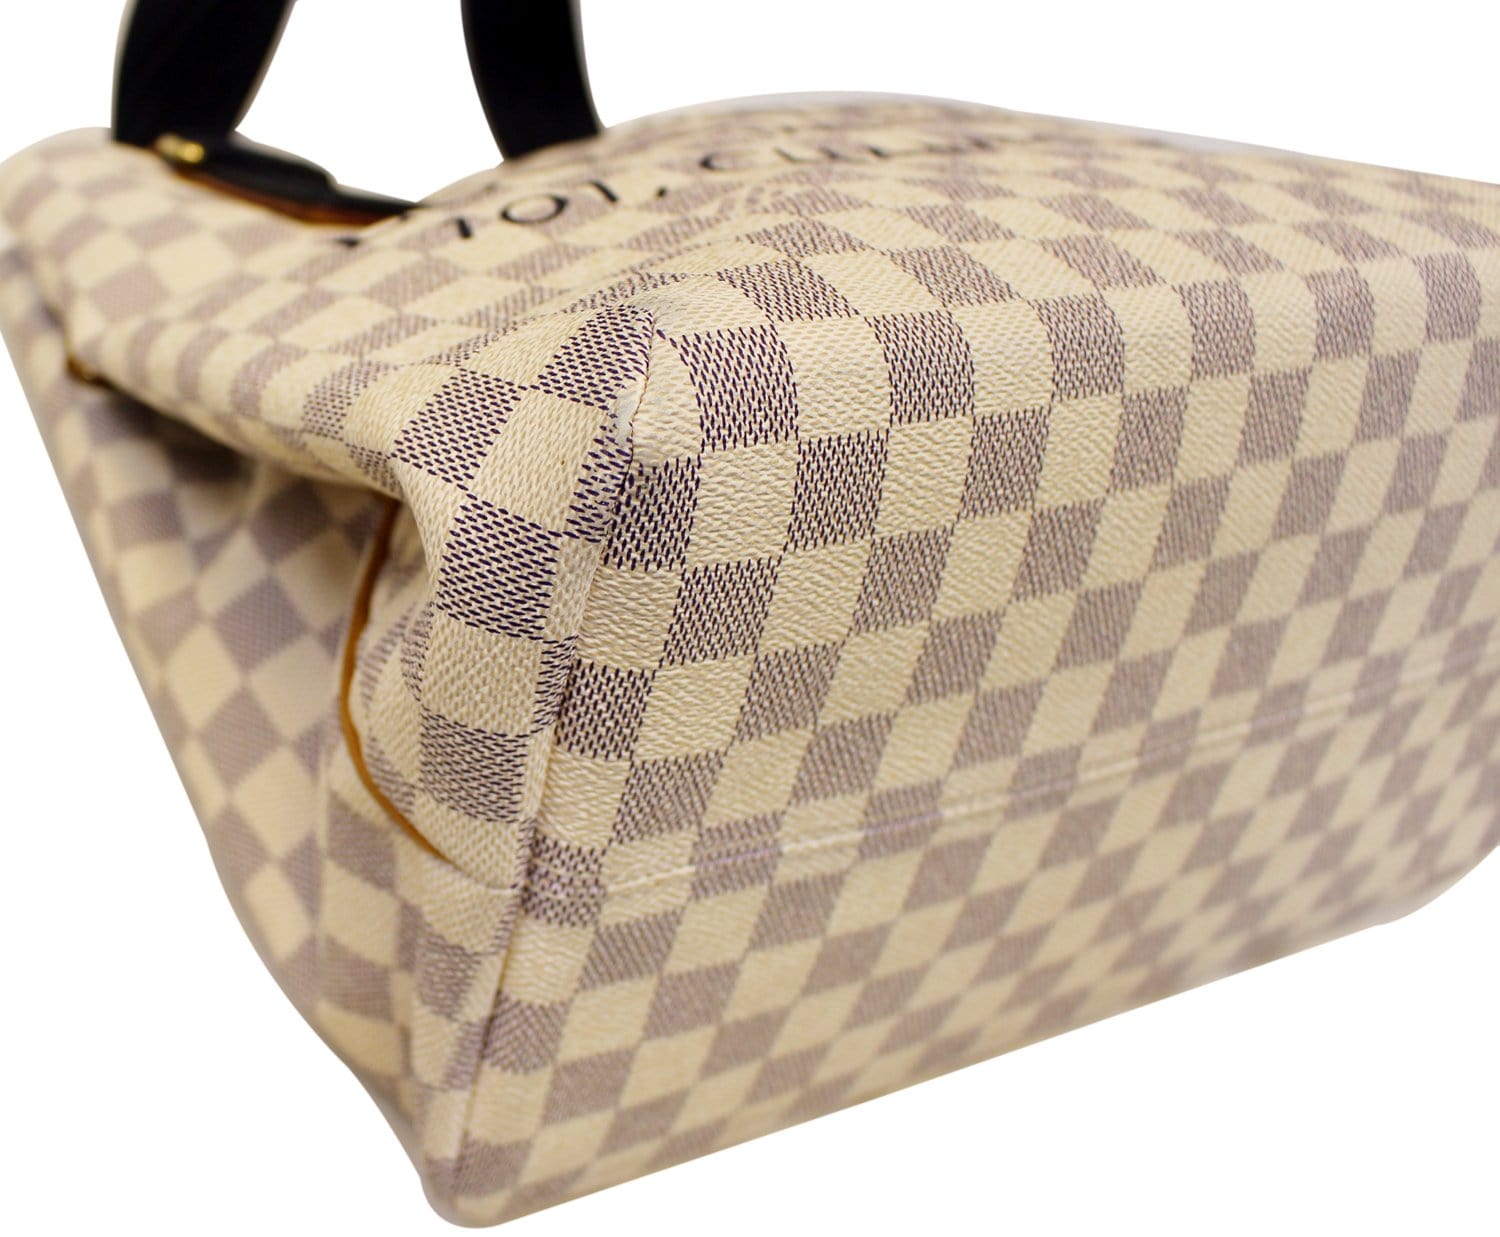 Lot - Louis Vuitton Beach Damier Azur Cabas Bag GM